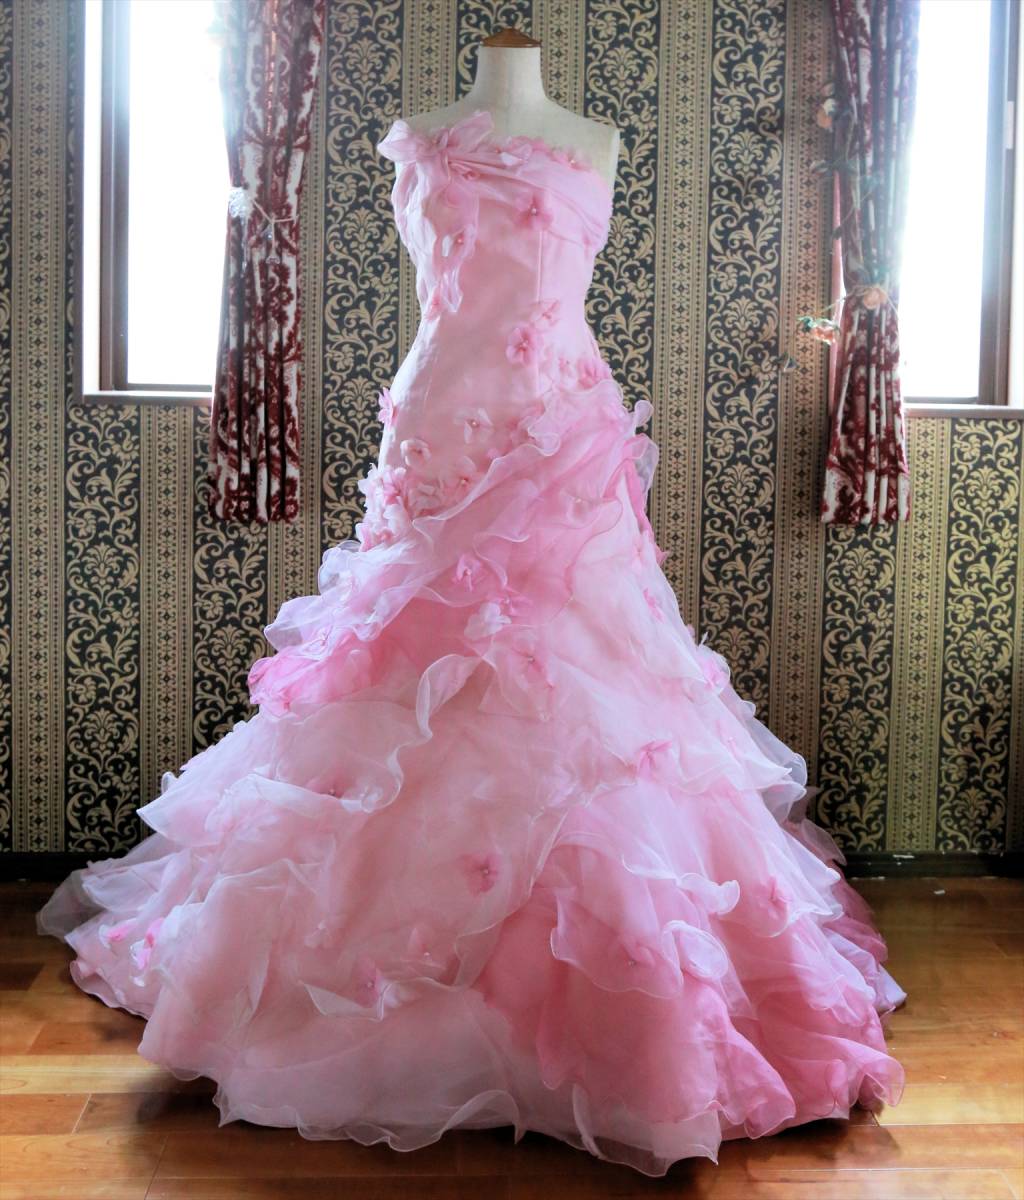 スーツ/フォーマル/ドレス超美品 アヤナチュール ピンク お姫様ドレス